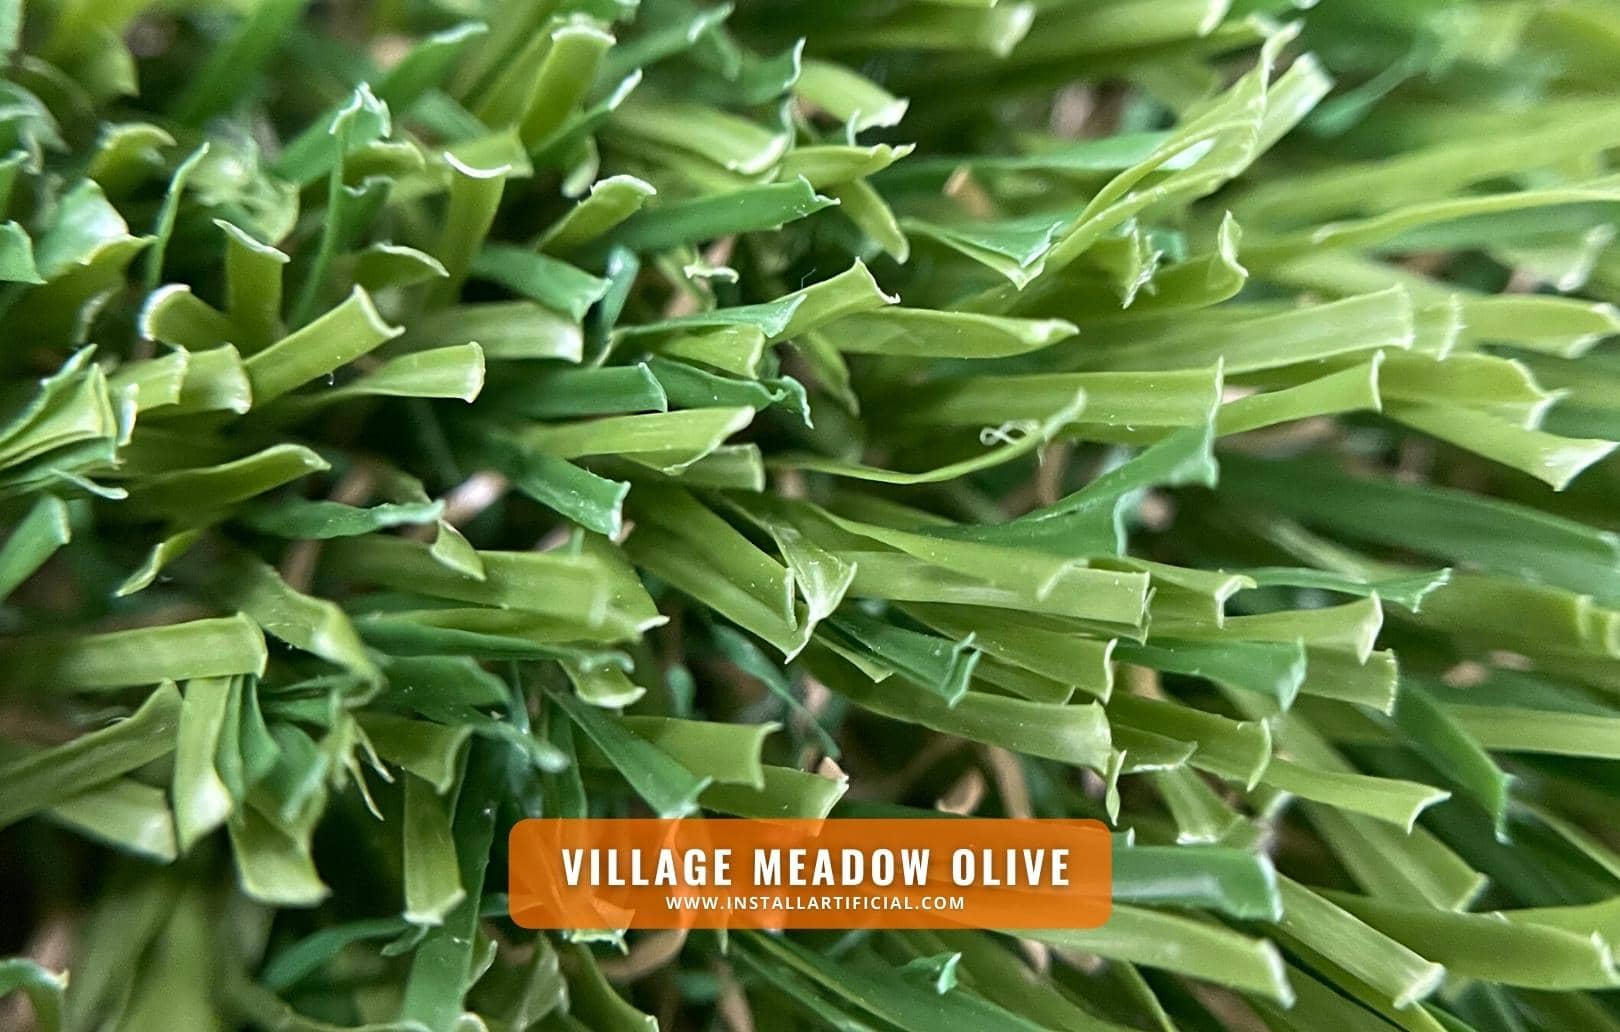 Village Meadow Olive, Shawgrass, macro